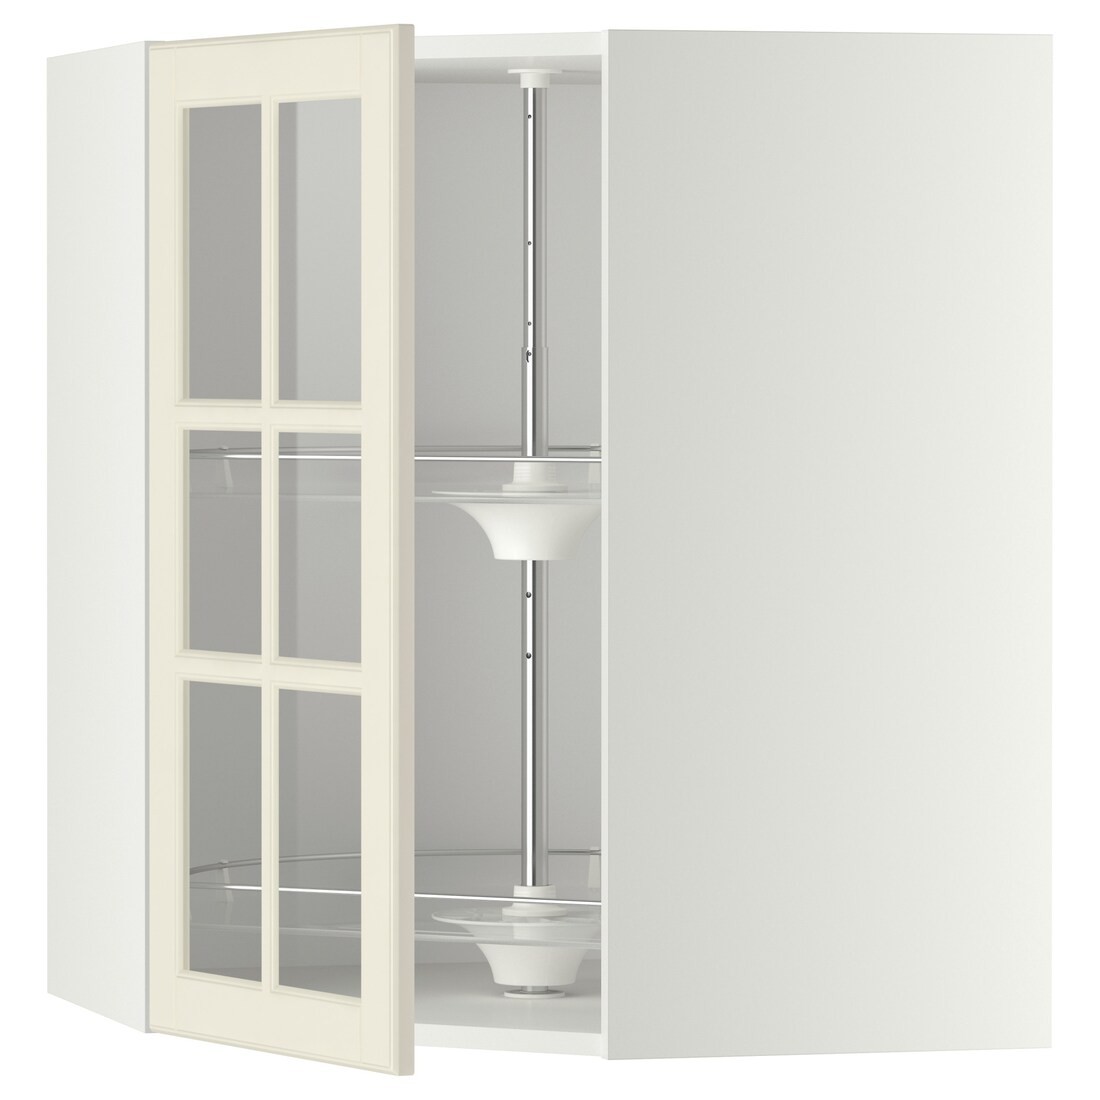 METOD МЕТОД Угловой настенный шкаф с каруселью / стеклянная дверь, белый / Bodbyn кремовый, 68x80 см